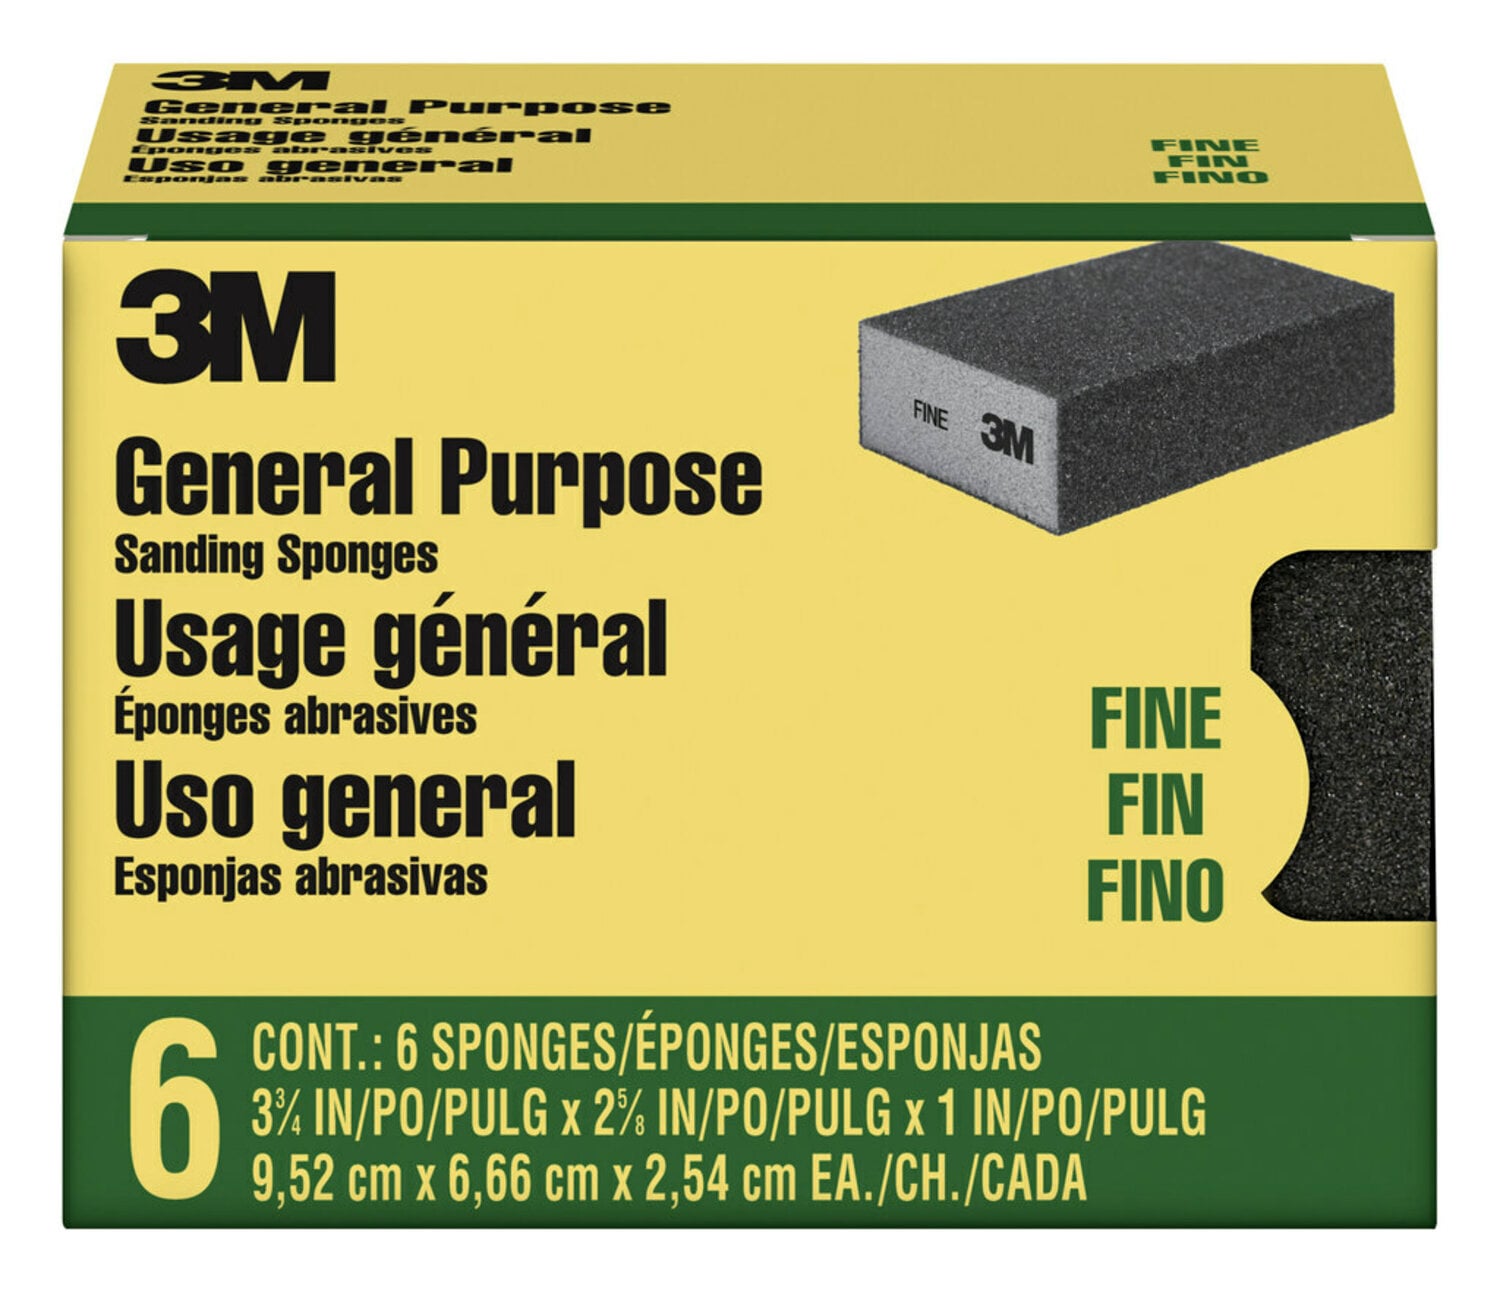 7100241235 - 3M Sanding Sponge CP001-6P-CC, 3 3/4 in x 2 5/8 in x 1 in Fine, 6-pack, 4 packs/cs